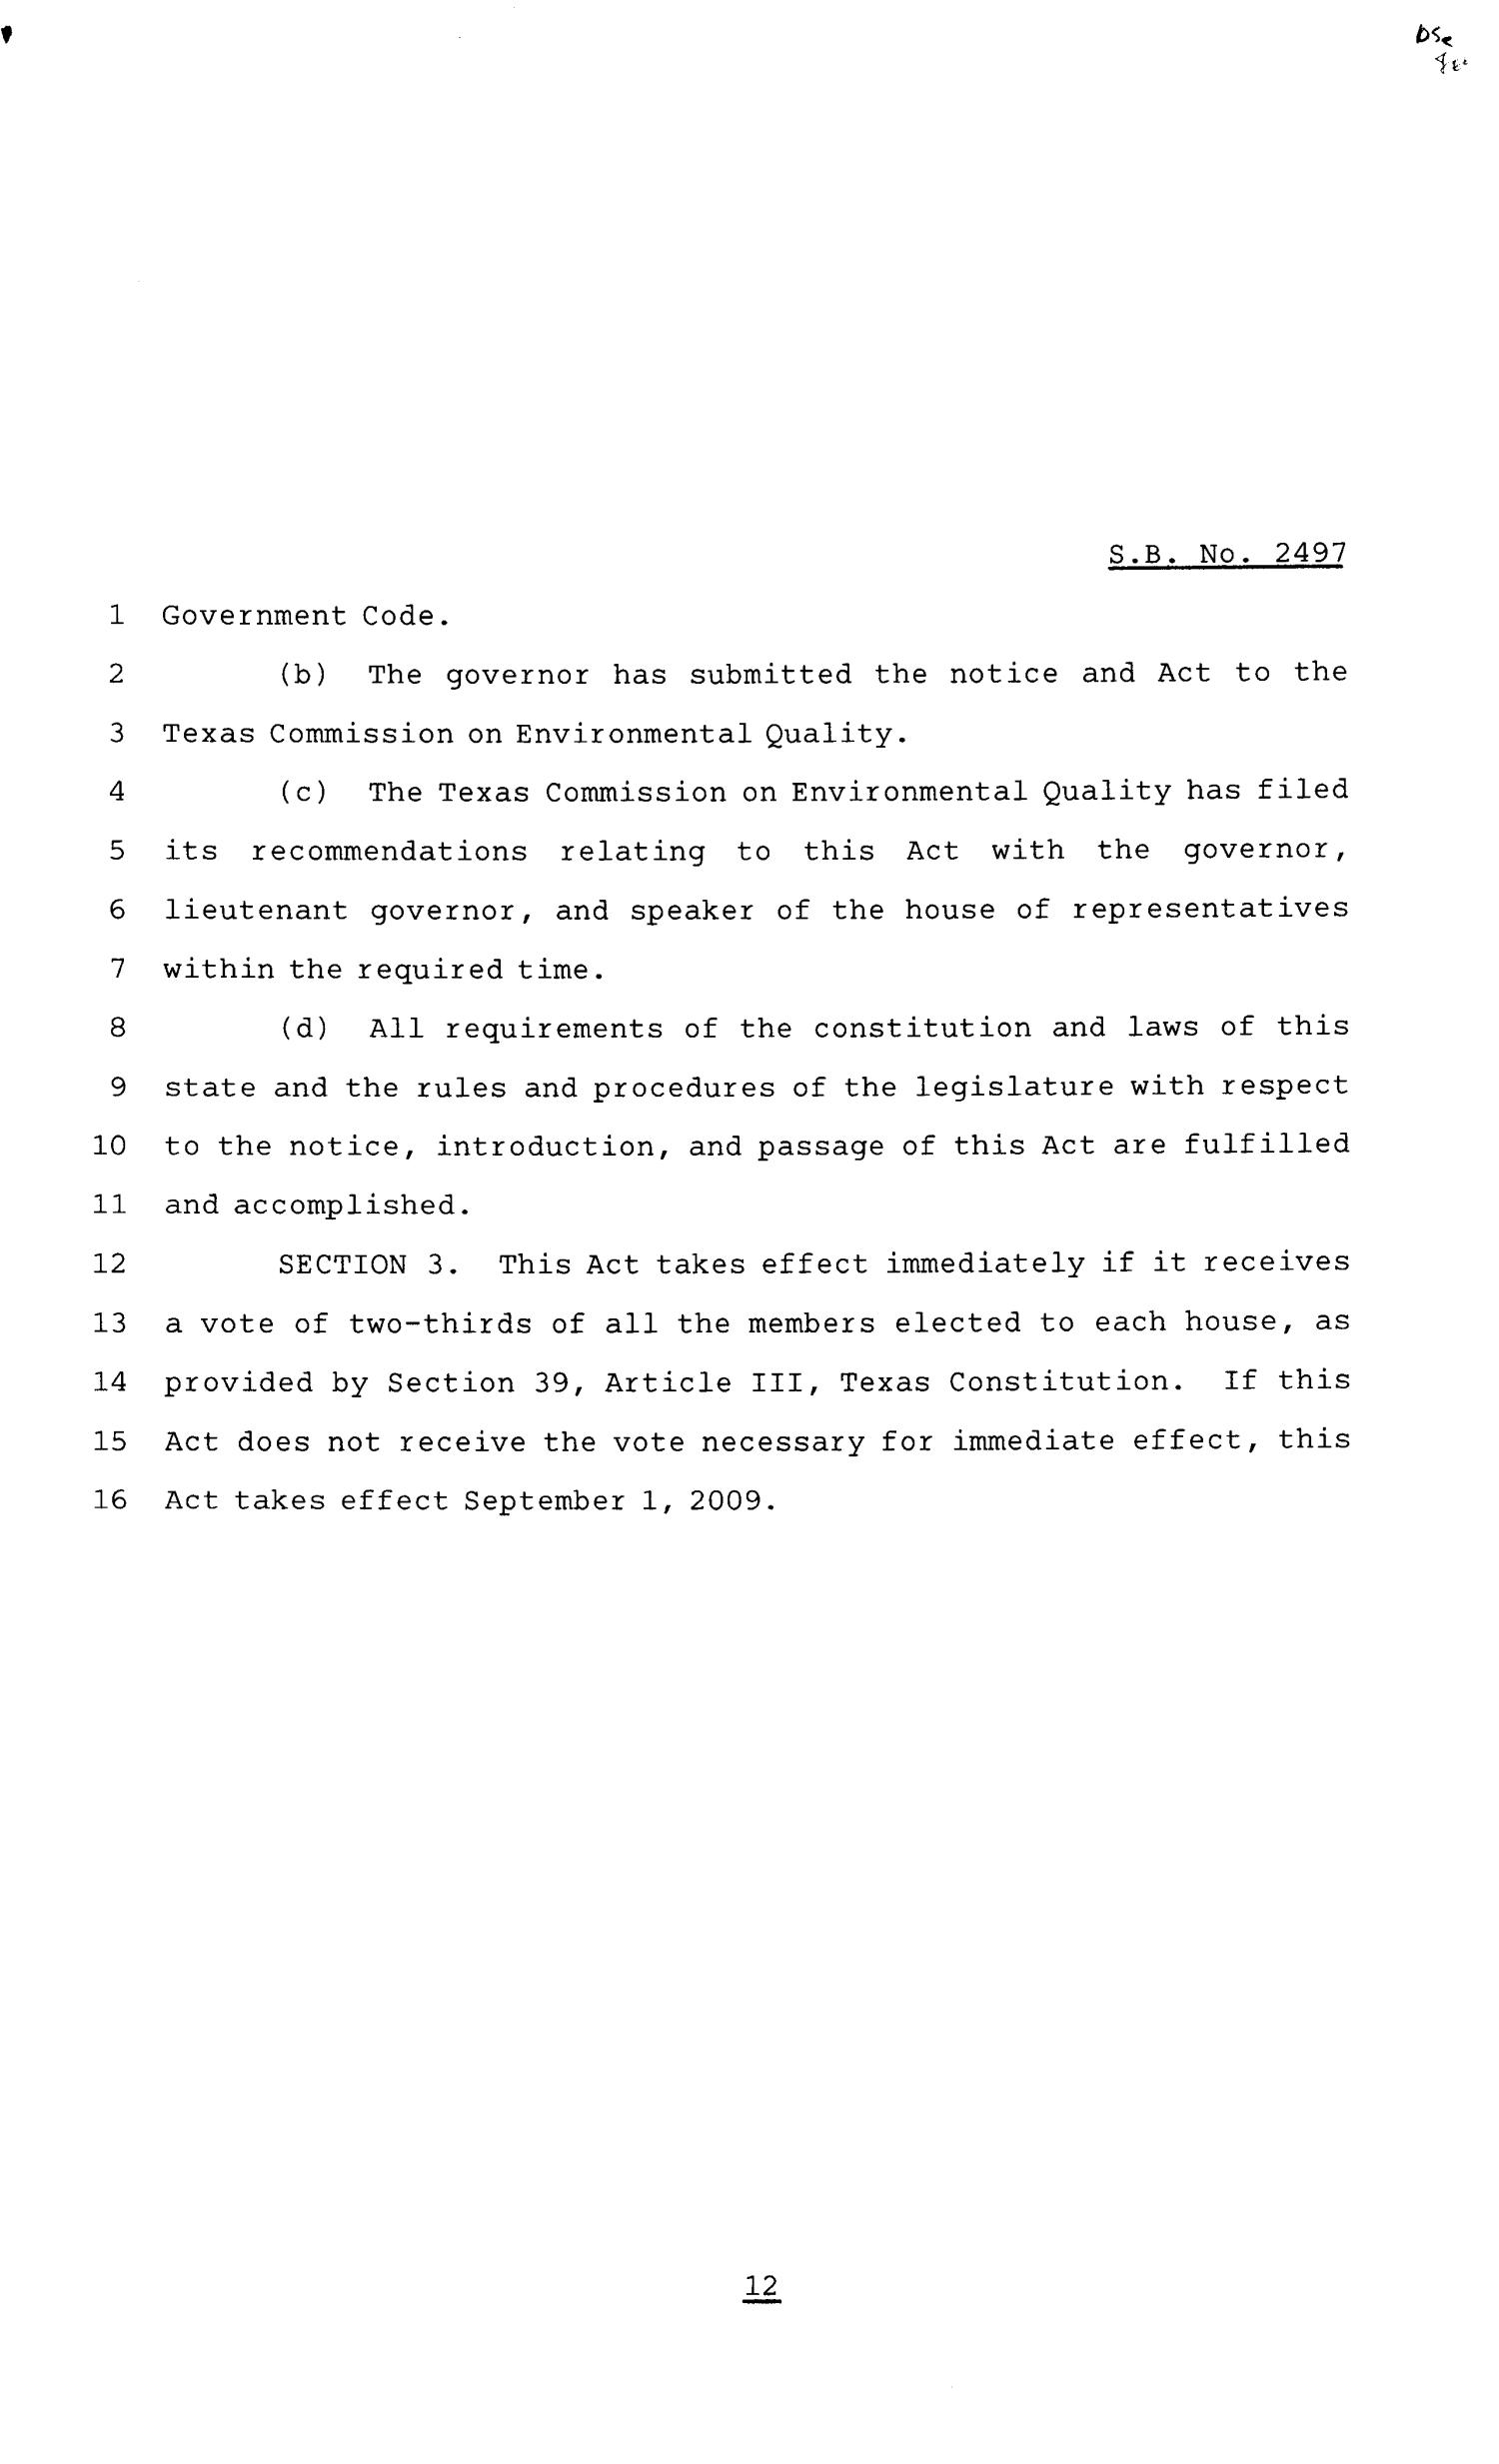 81st Texas Legislature, Senate Bill 2497, Chapter 248
                                                
                                                    [Sequence #]: 12 of 13
                                                